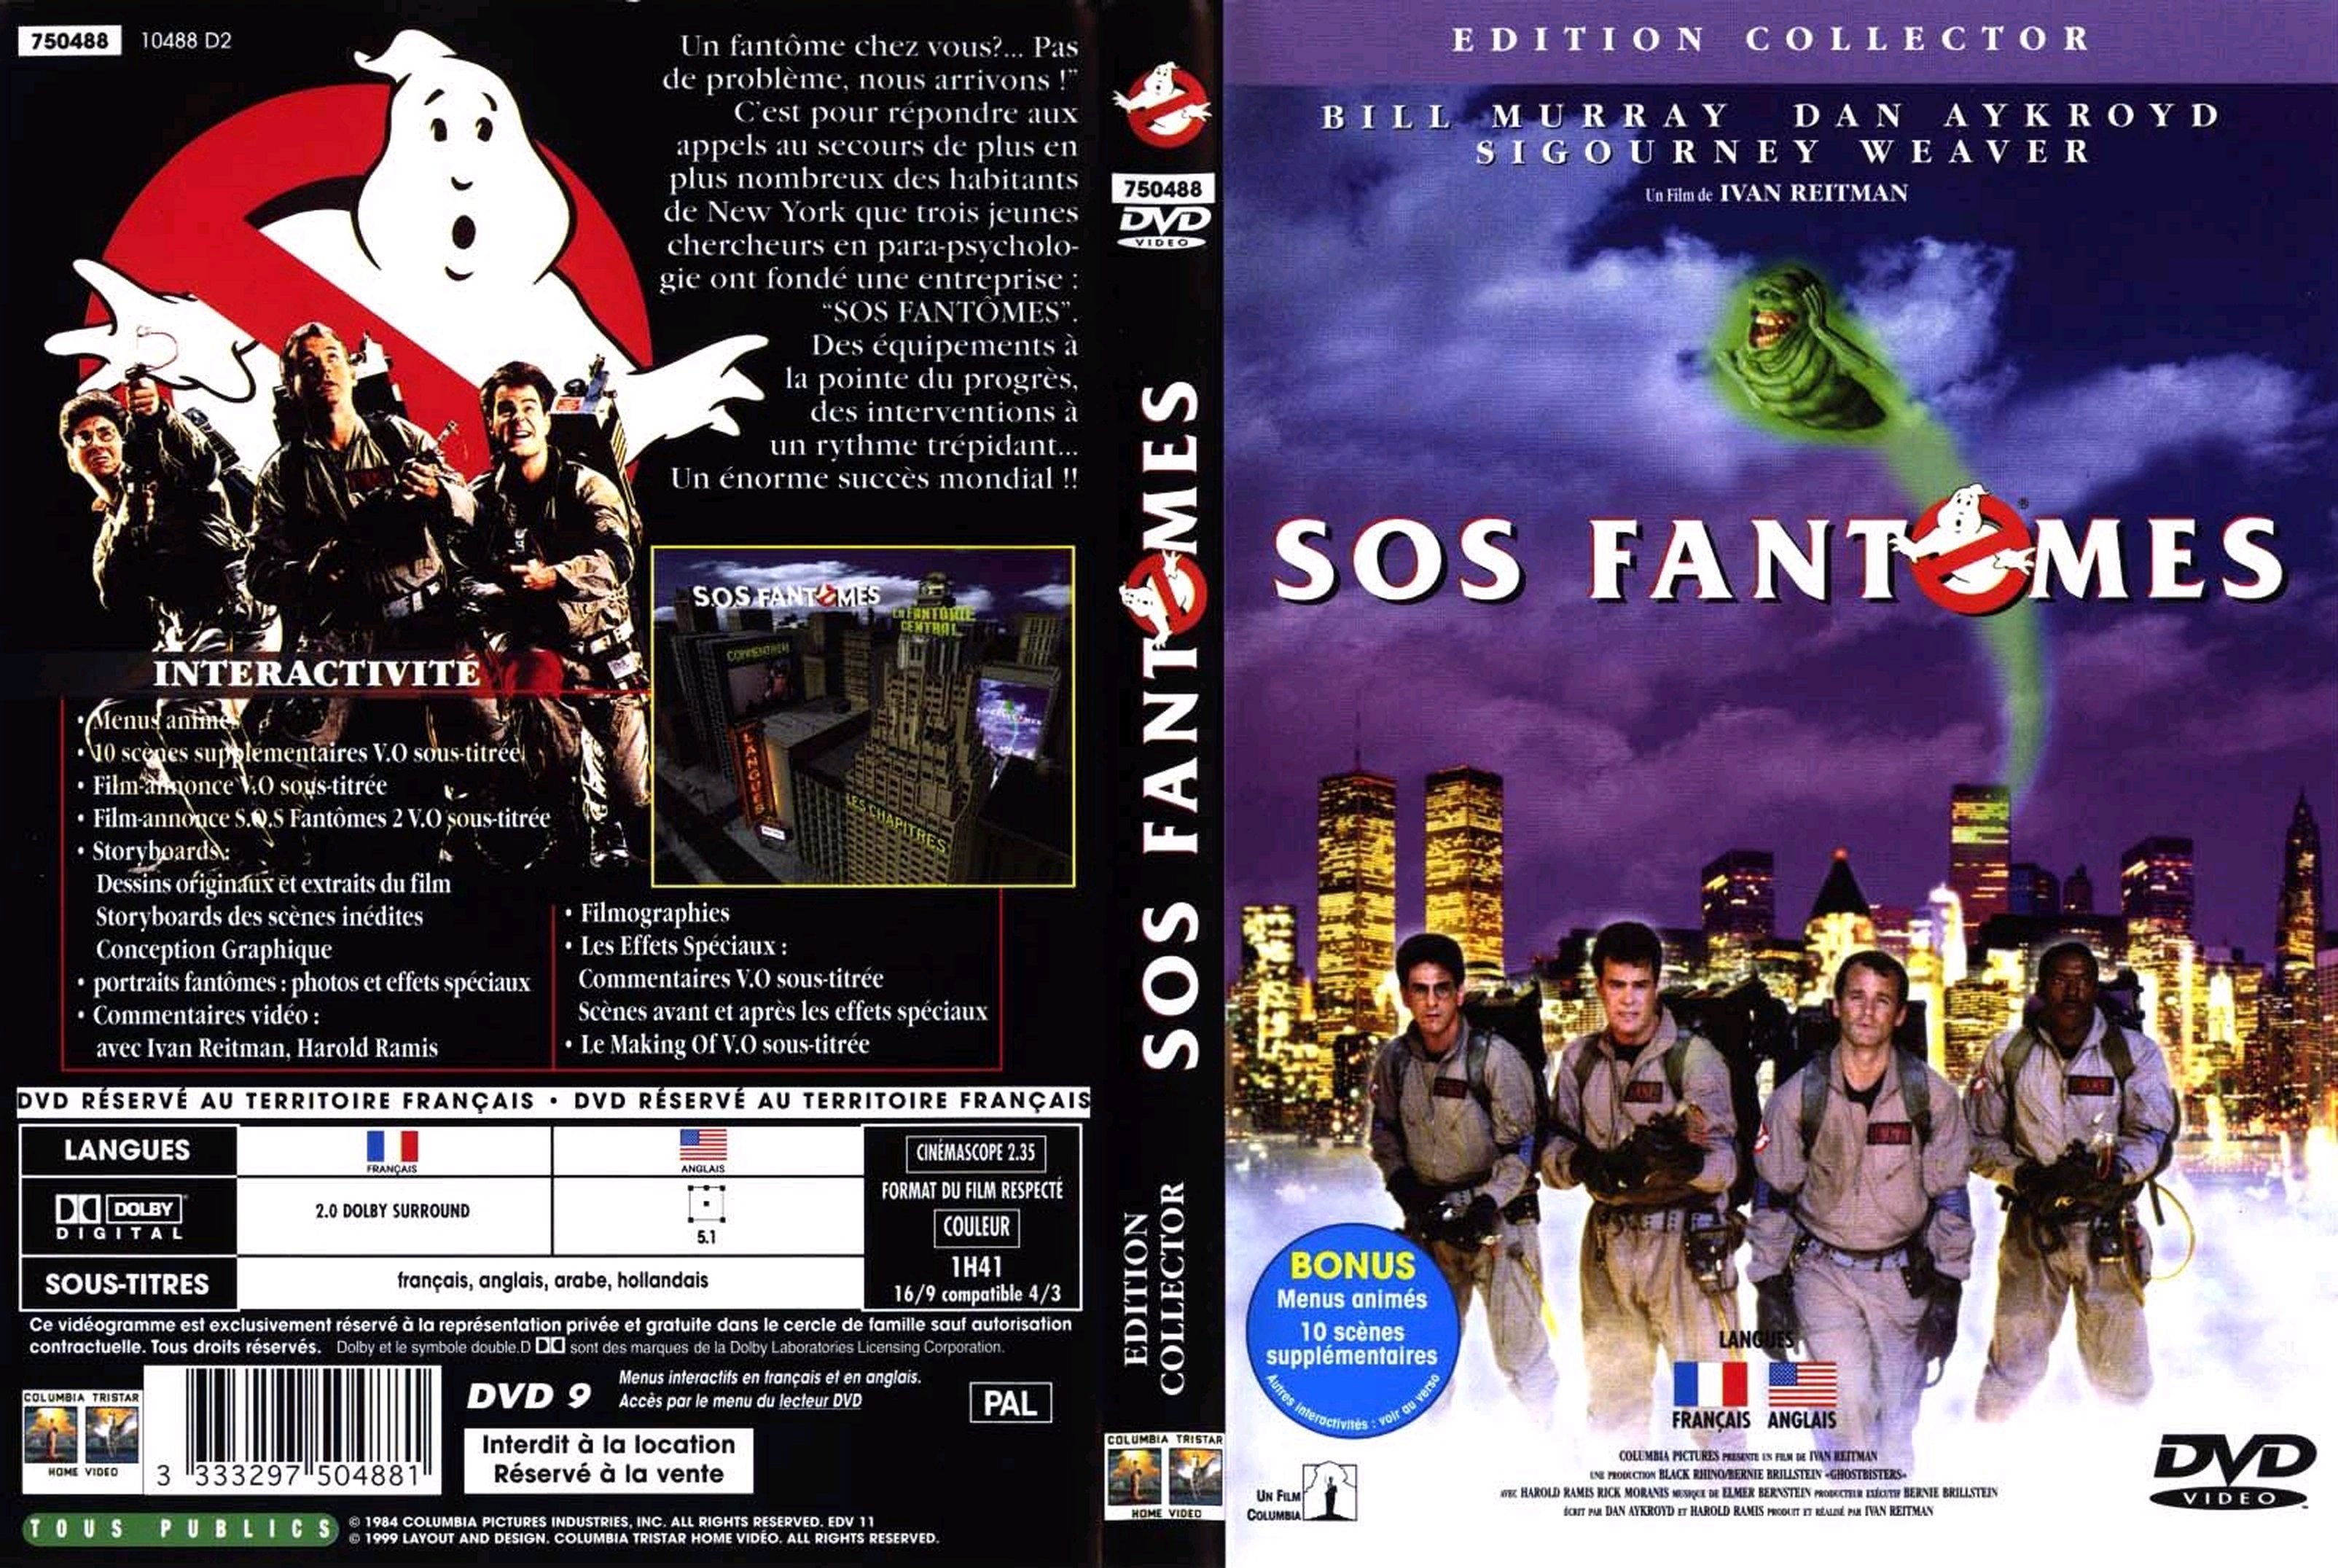 Jaquette DVD SOS fantomes v2